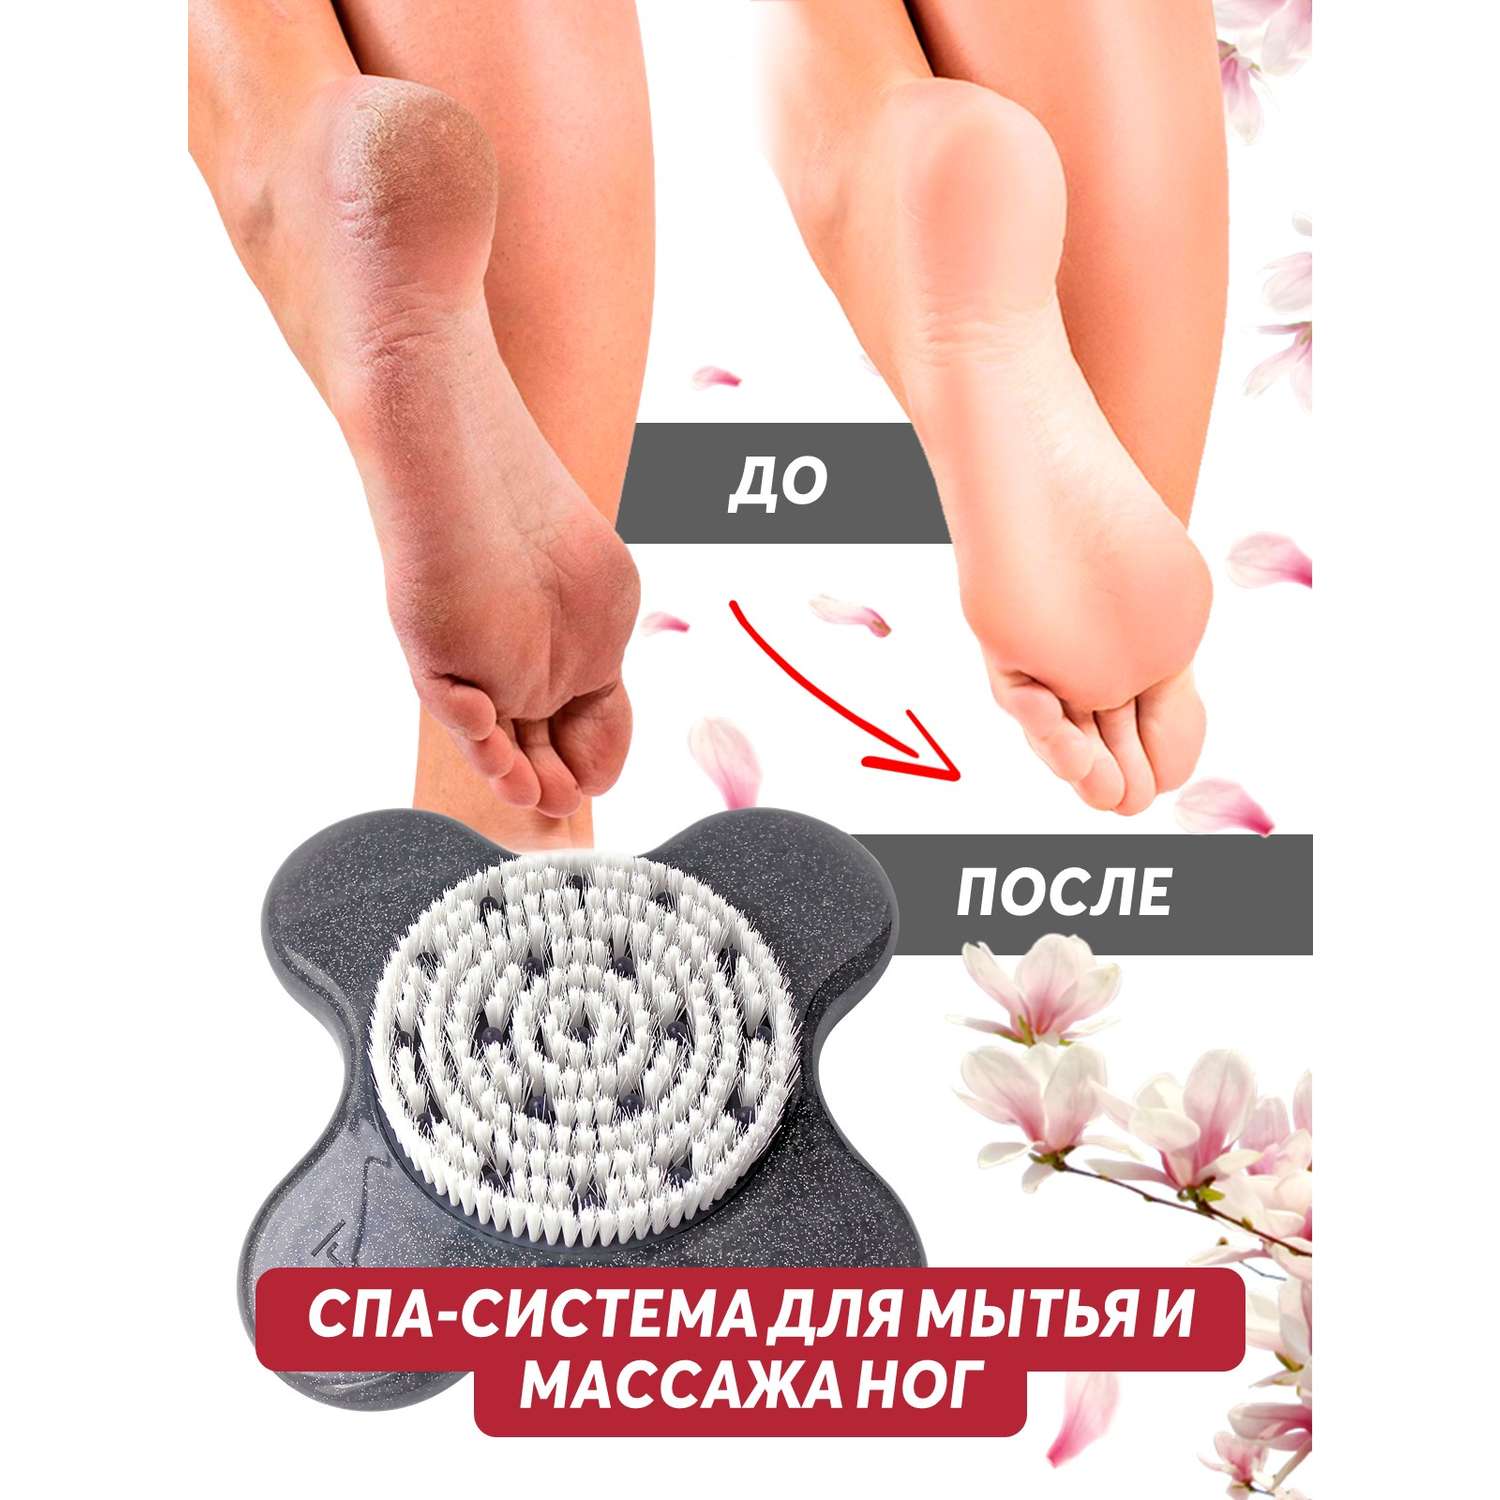 Щетка-массажер FEETBRUSH на присосках для мытья и массажа ног - фото 5